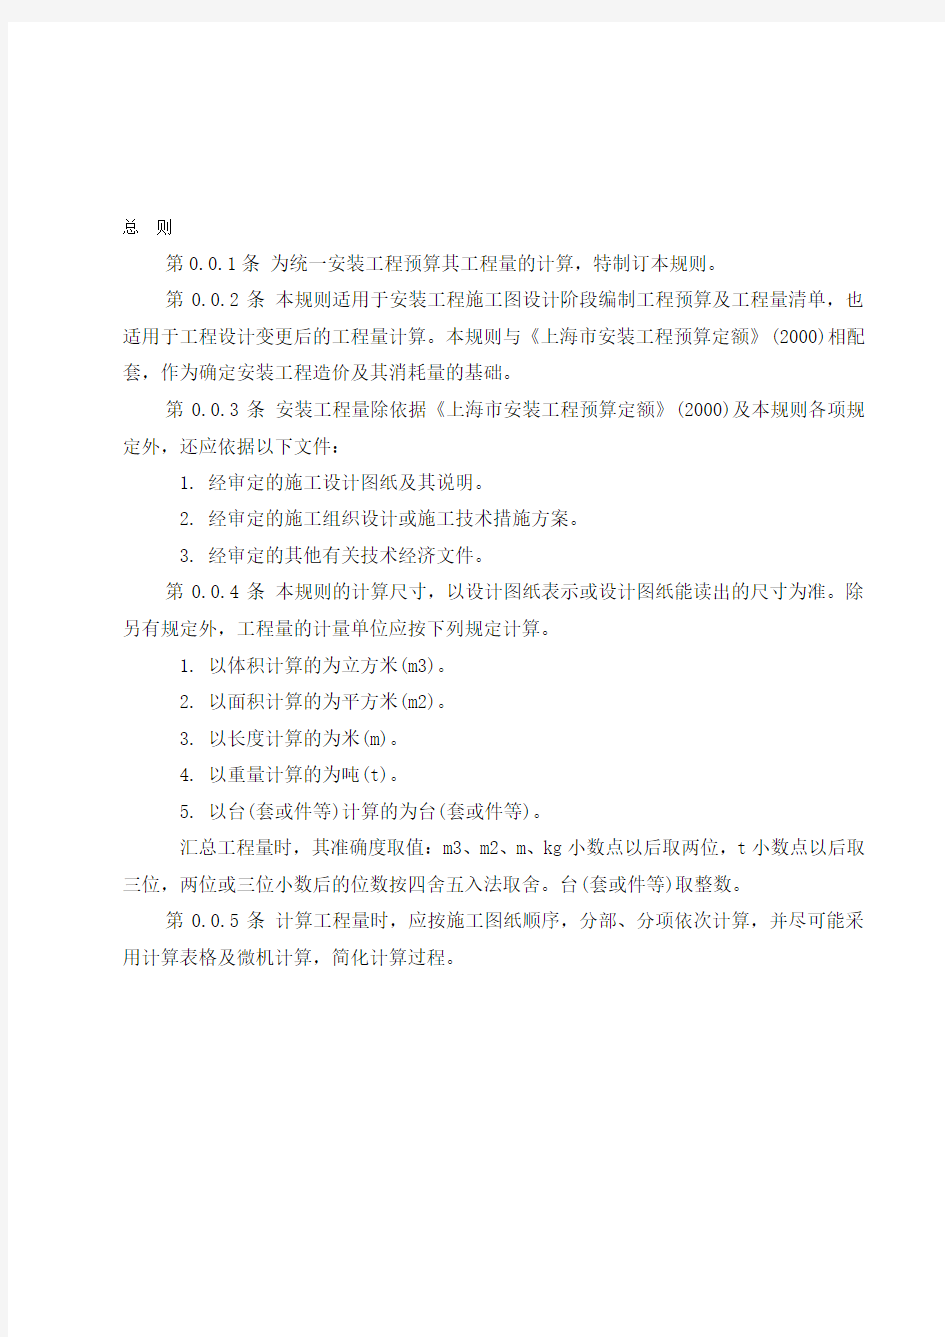 上海市安装工程预算定额(2000)工程量计算规则